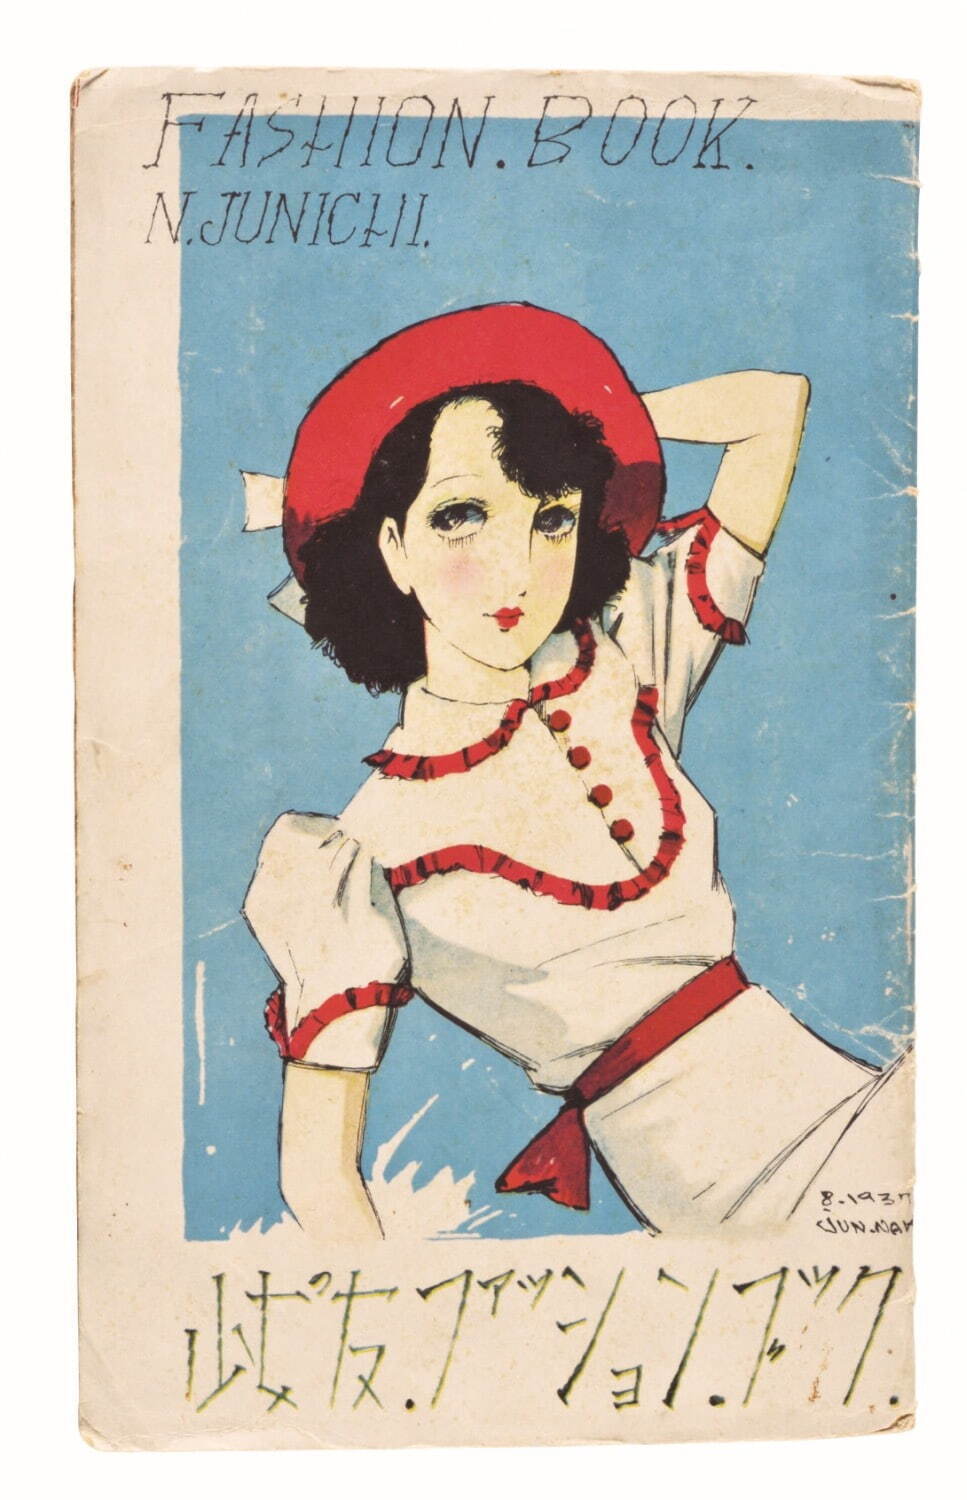 中原淳一 《「ファッションブック」(『少女の友』第30巻第8号付録)》 1937年 個人蔵
©JUNICHI NAKAHARA / HIMAWARIYA